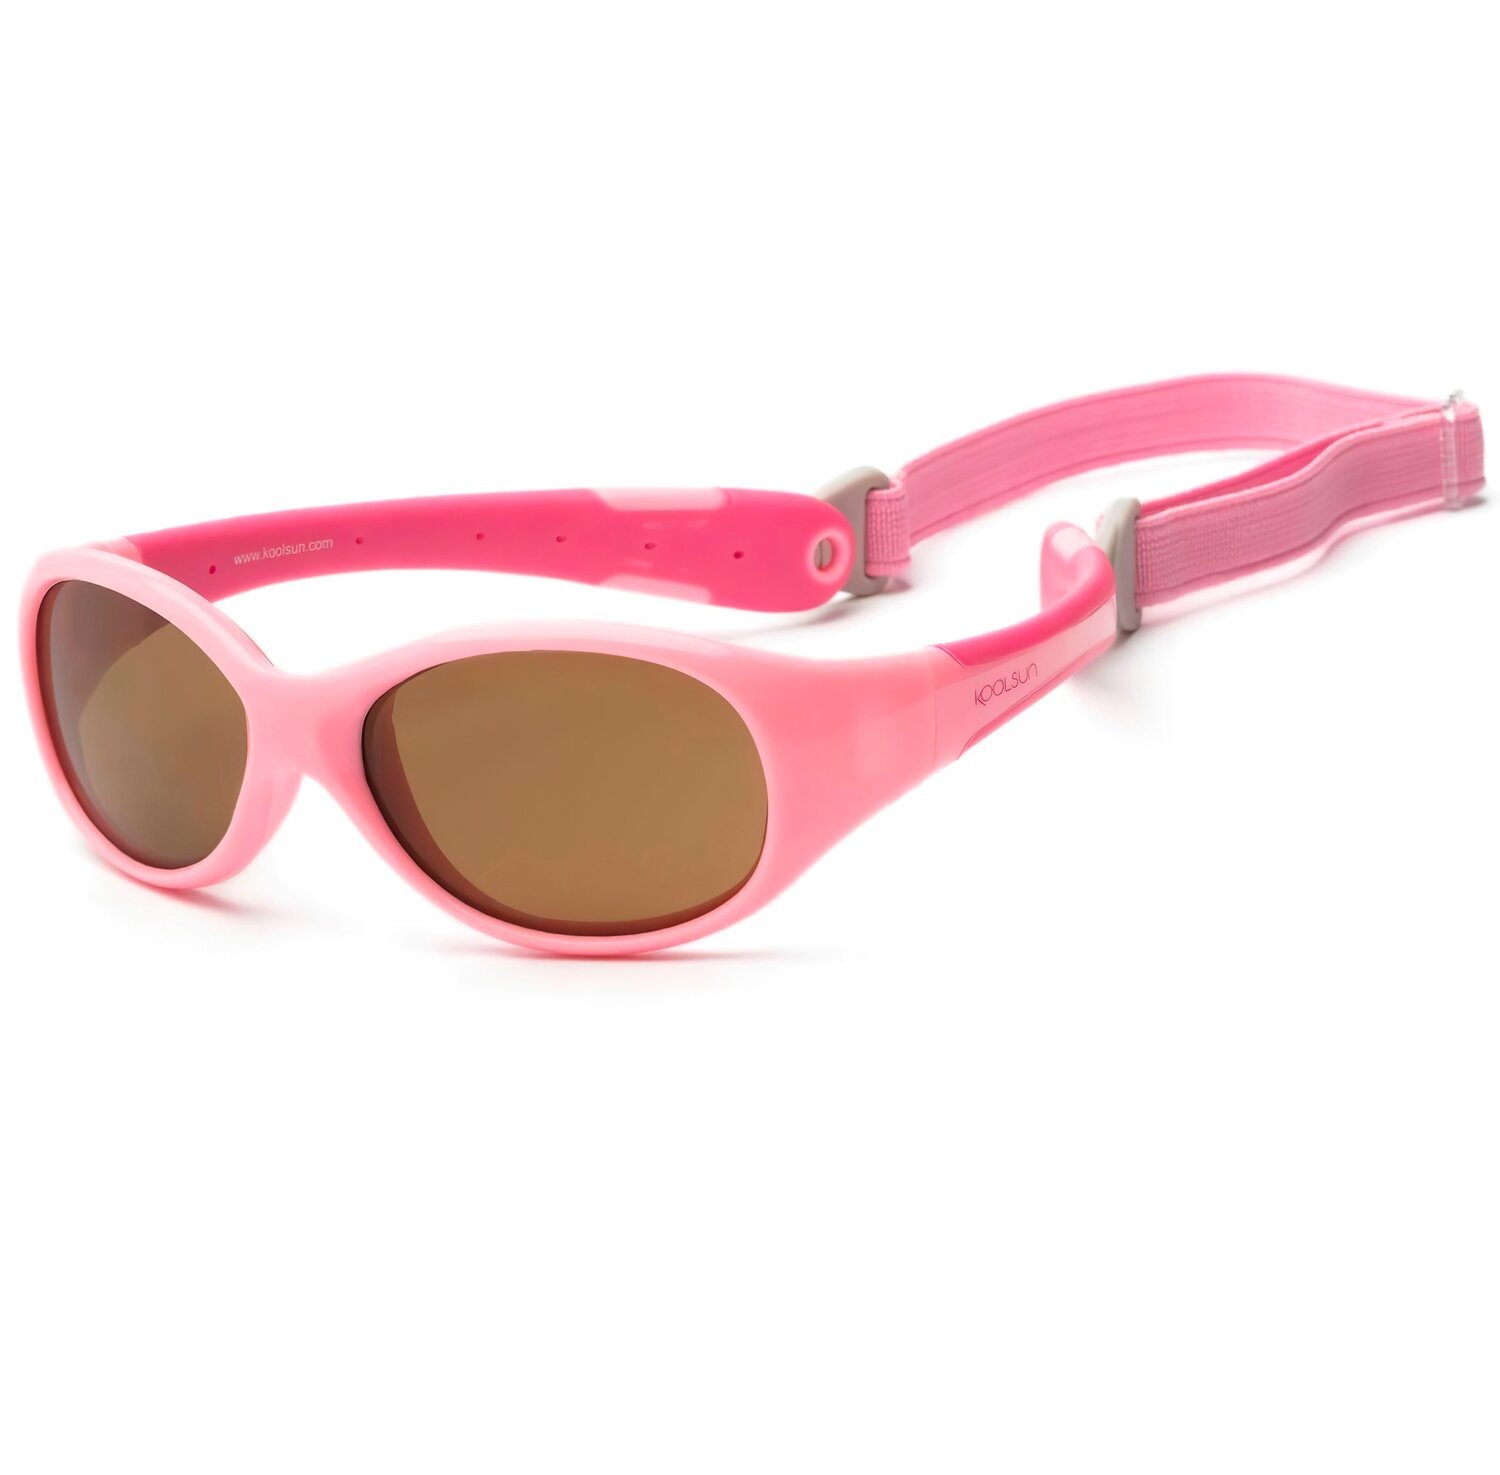 Детские солнцезащитные очки Koolsun Flex розовые (Размер 0+) (KS-FLPS000) фото 